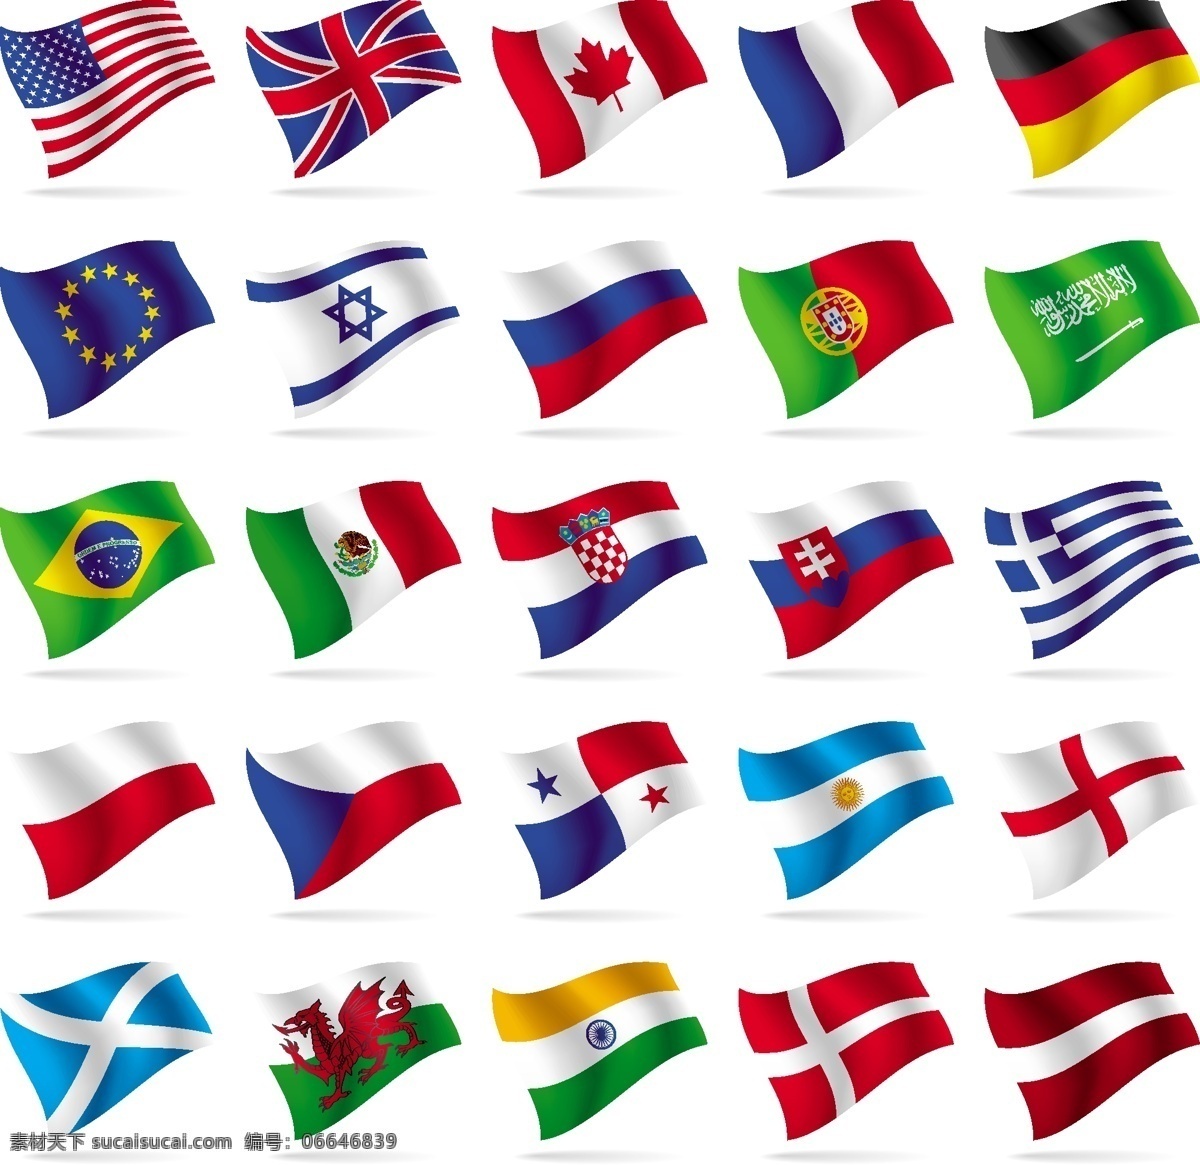 标识 标志 国旗 其他矢量 矢量素材 矢量图库 世界 世界各国 矢量 模板下载 世界各国国旗 图标 psd源文件